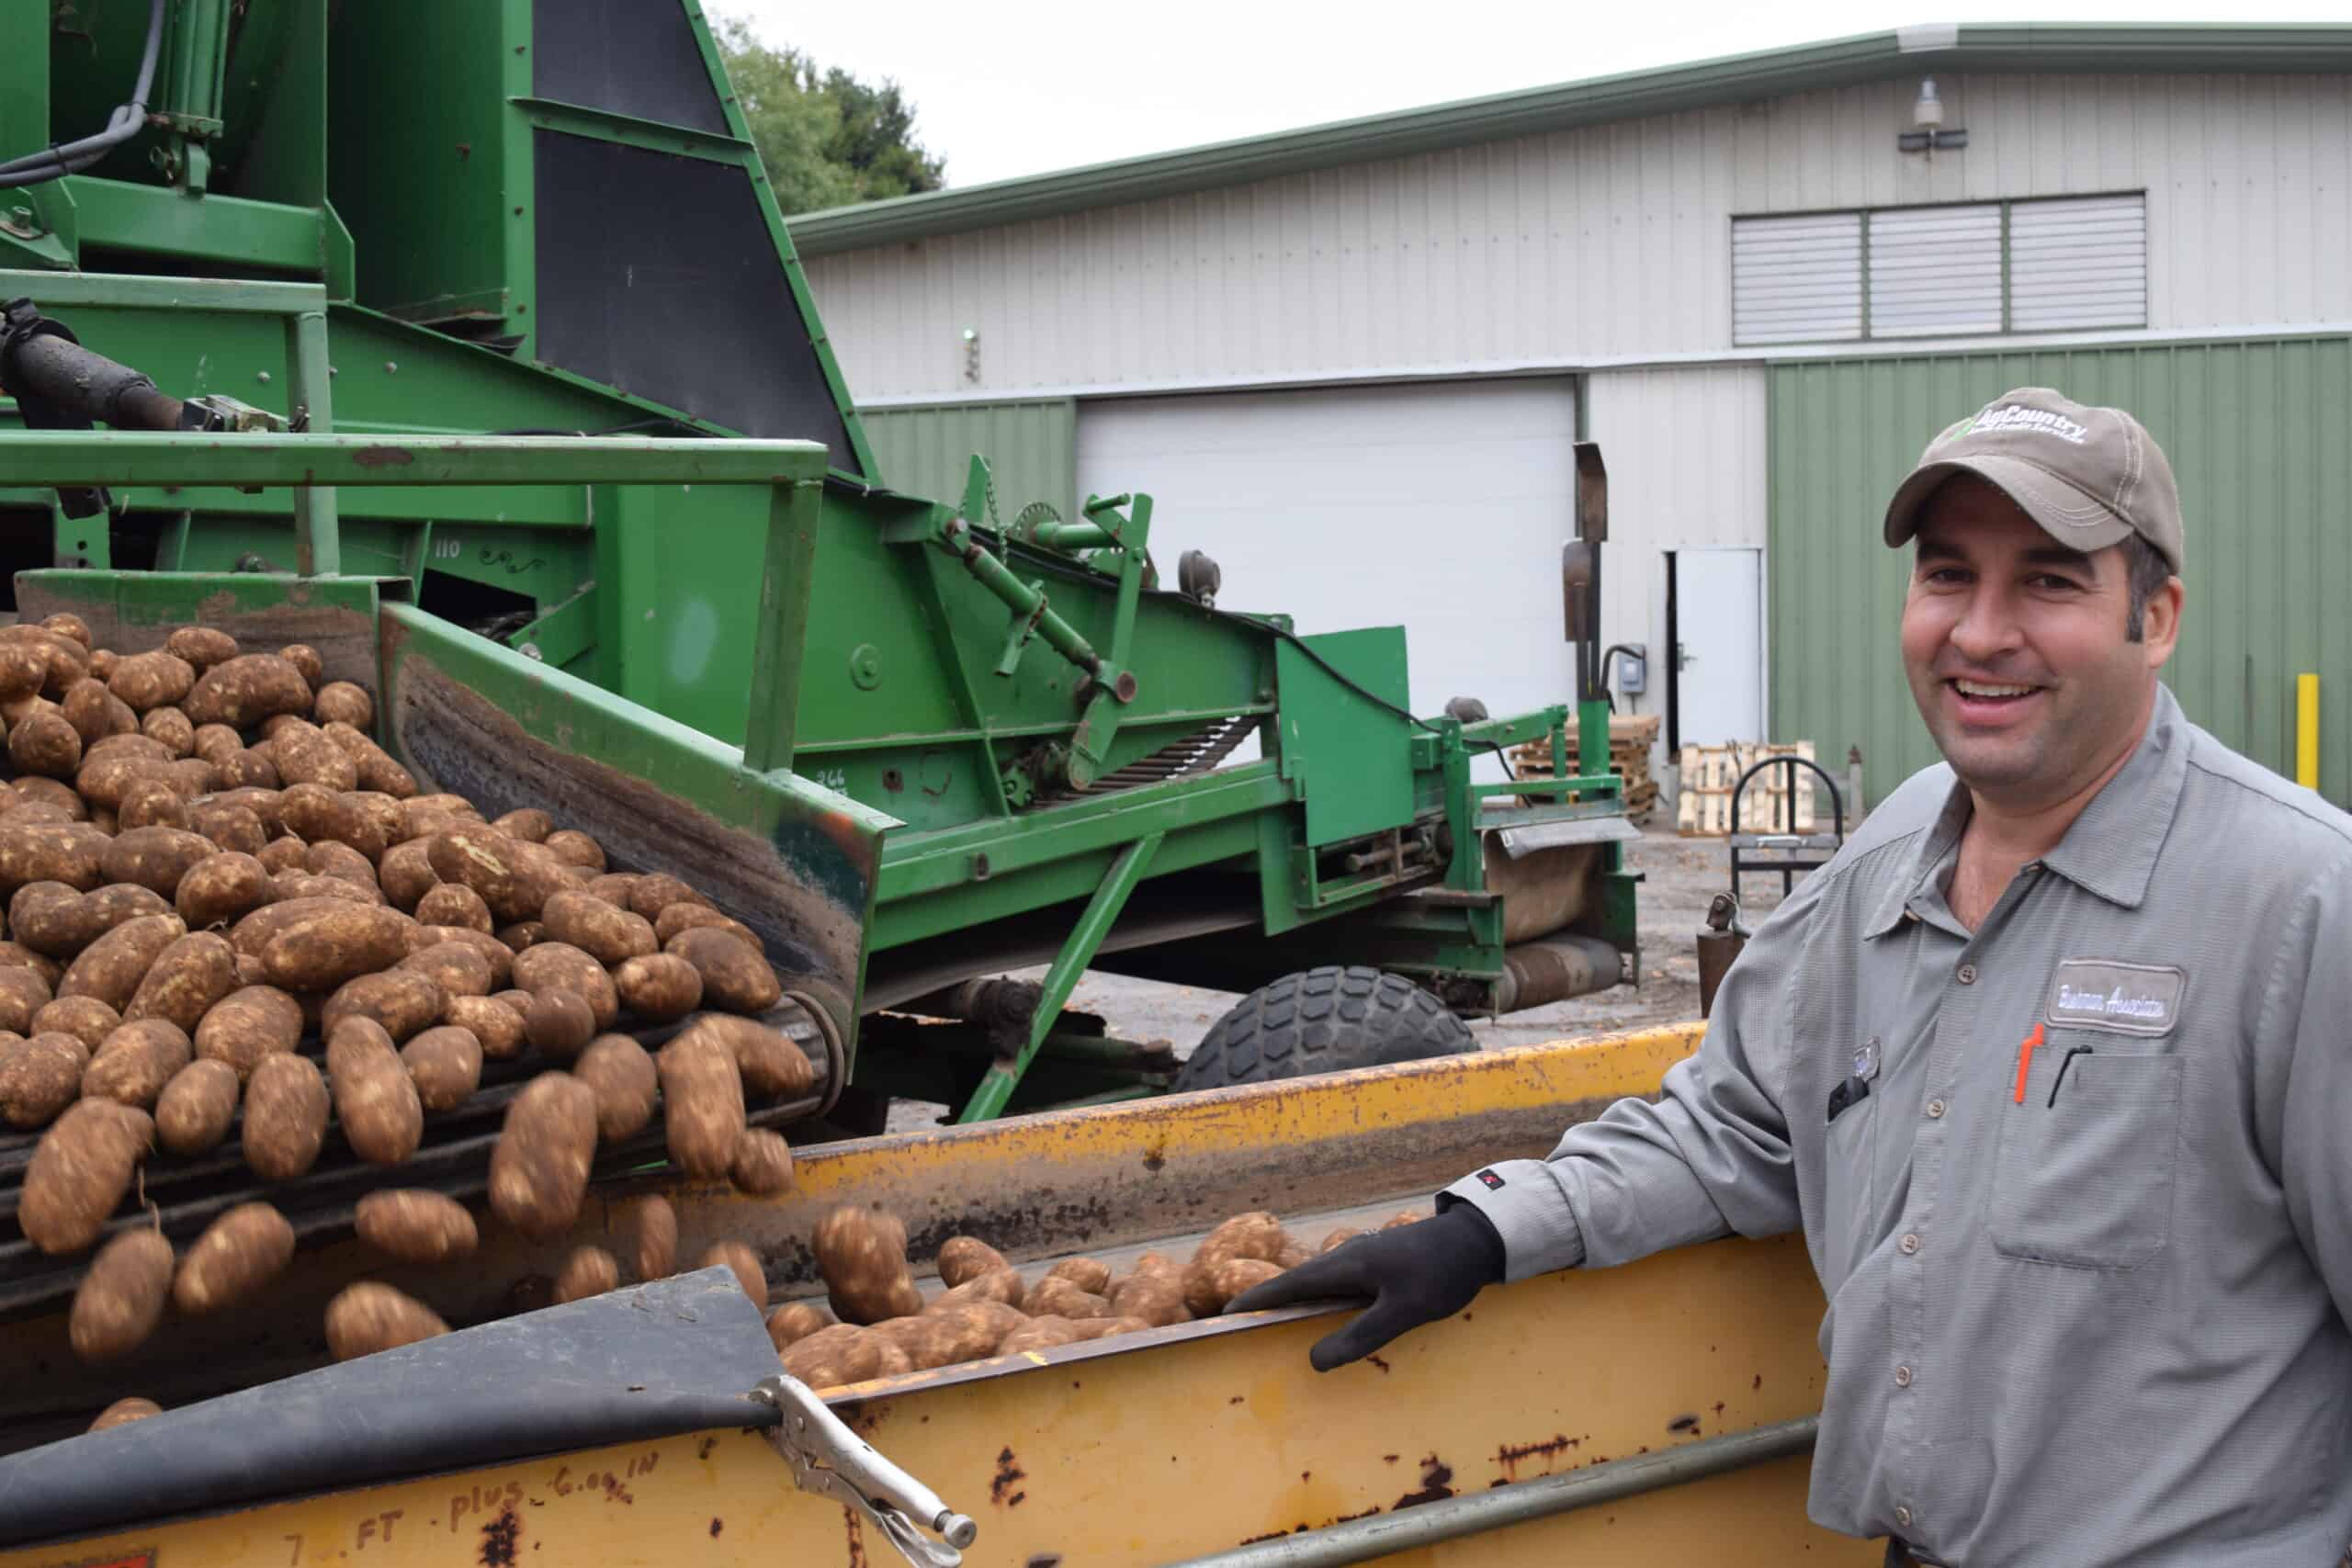 Employee sorting potatoes